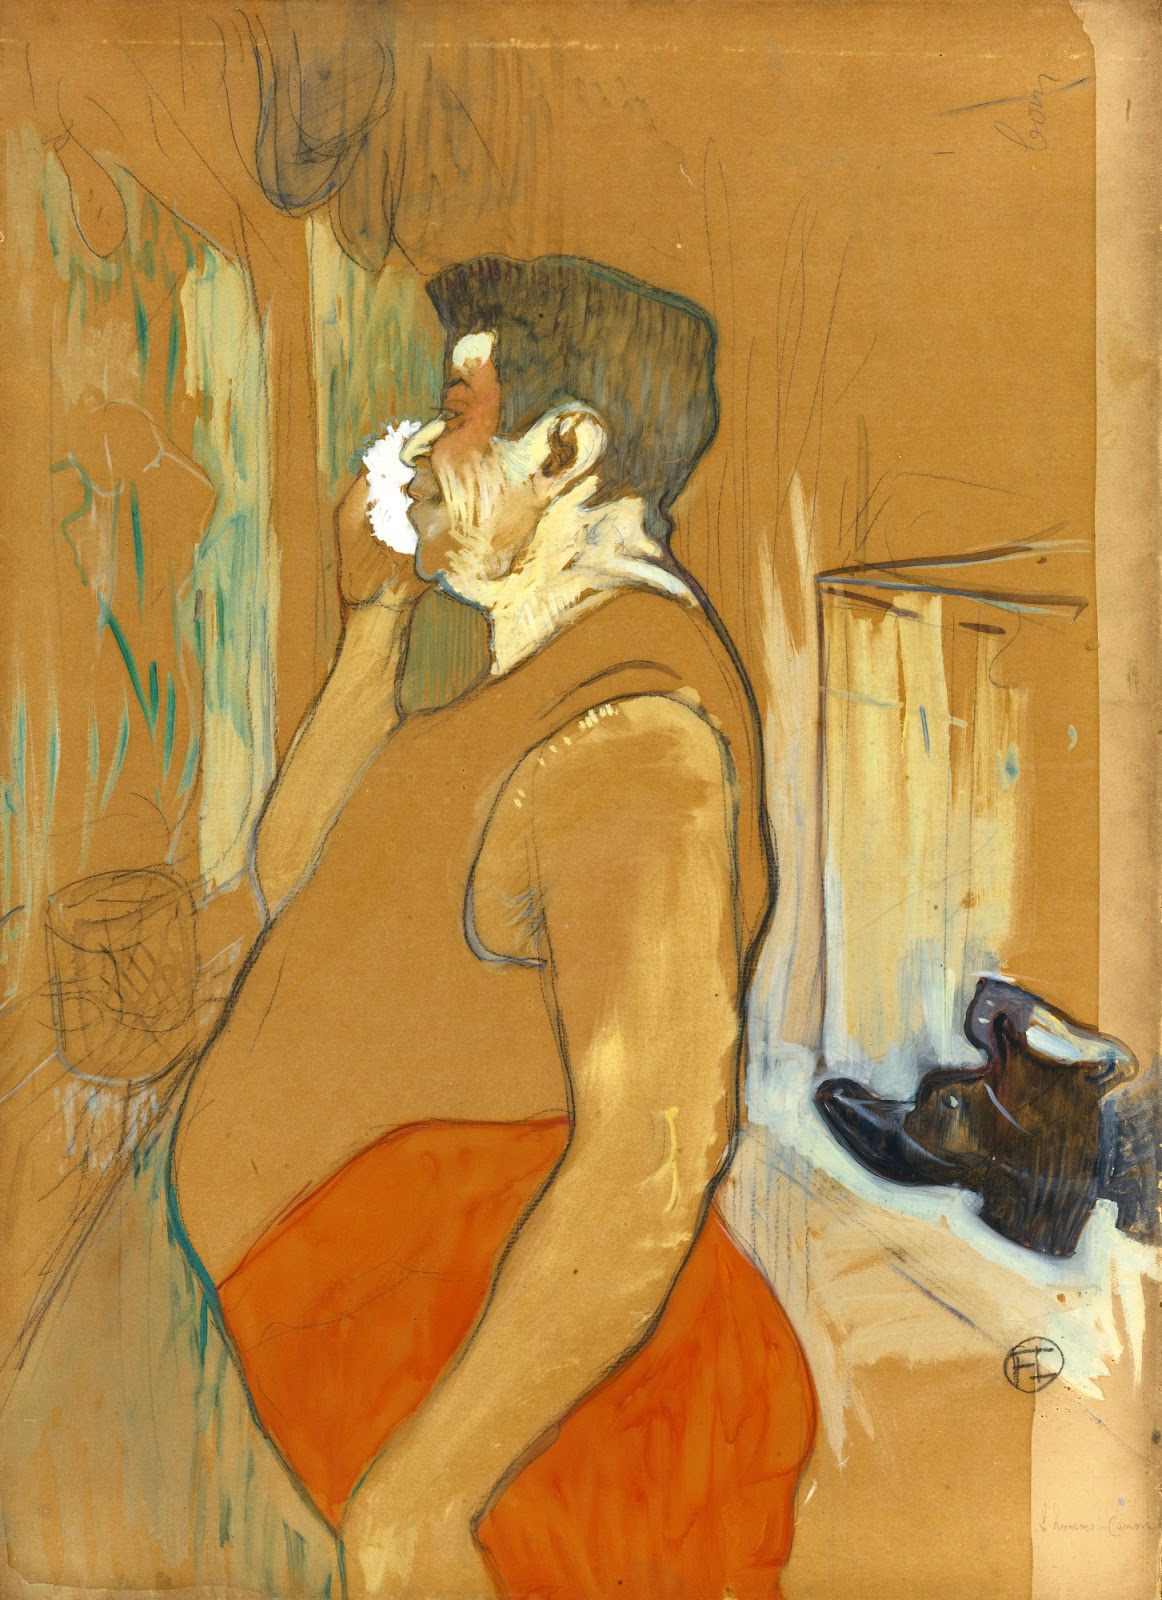 Henri+de+Toulouse+Lautrec-1864-1901 (90).jpg